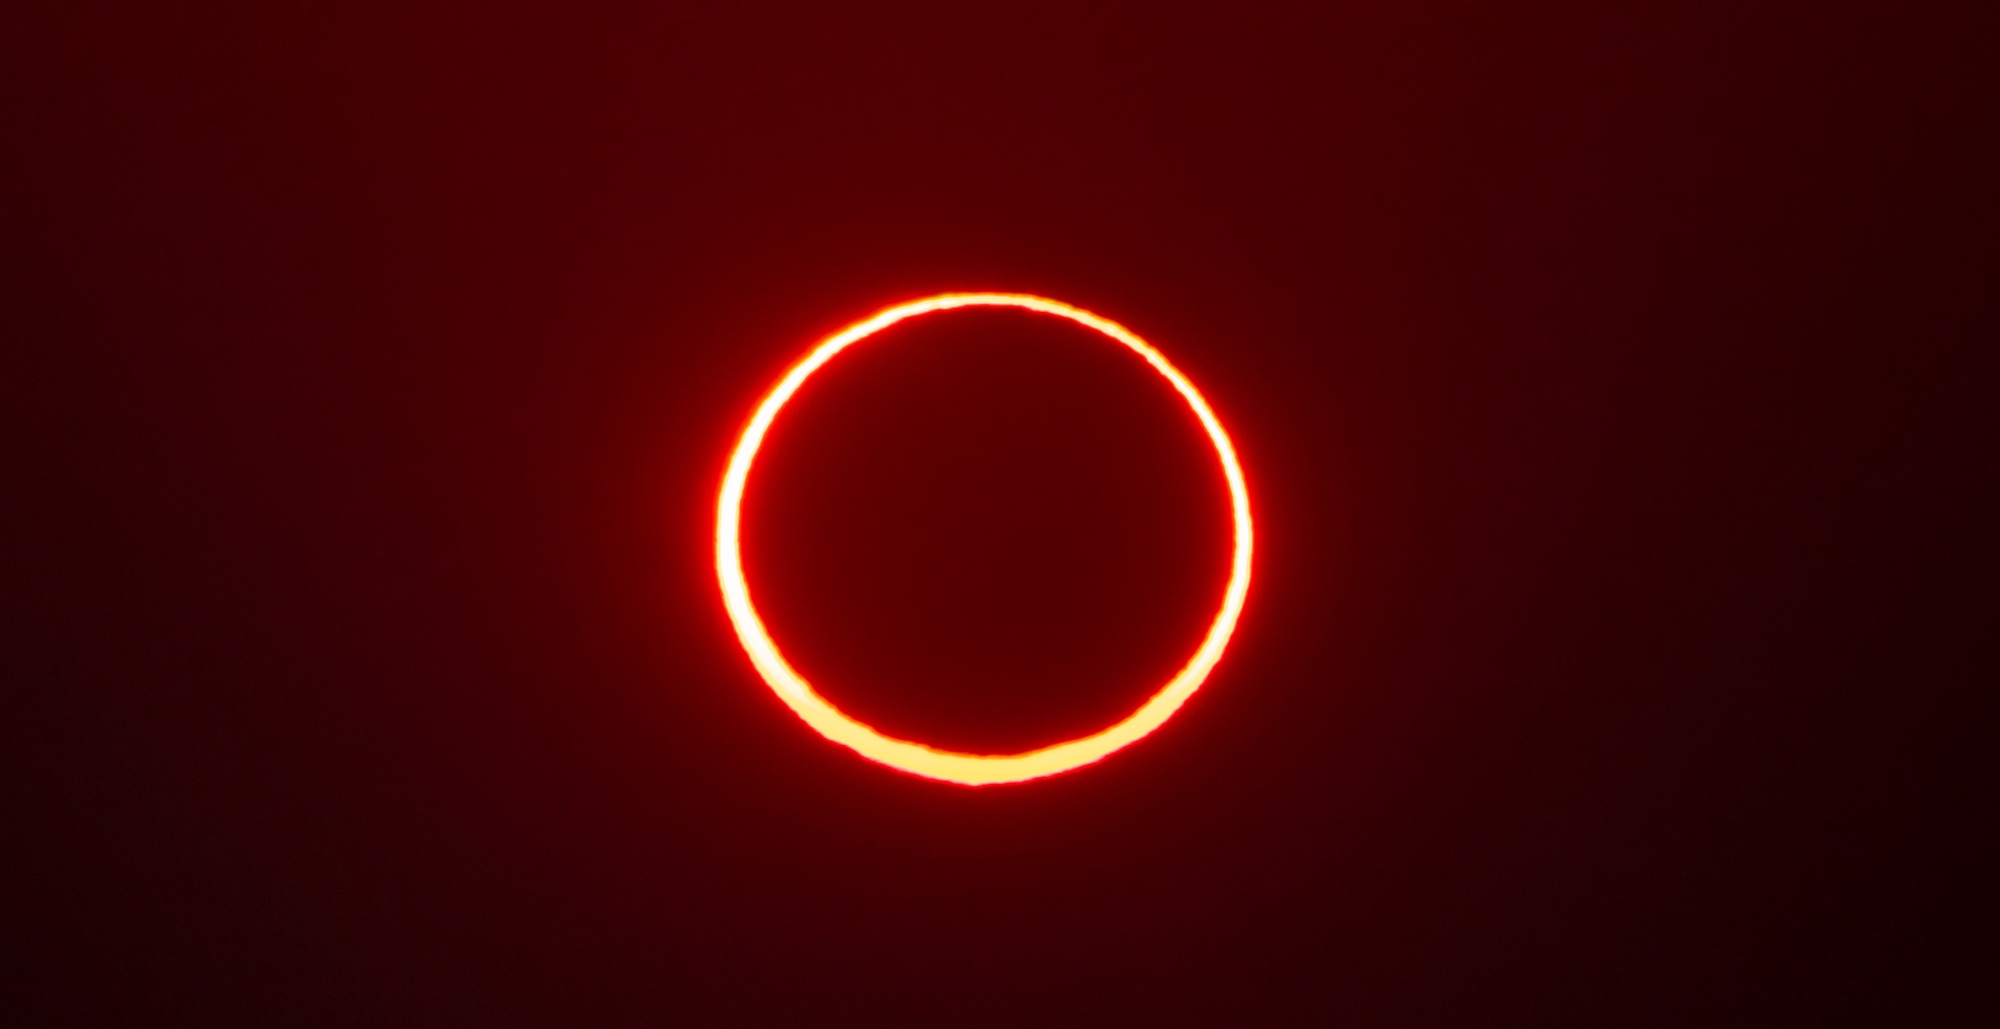 Un « anneau de feu » entourant le disque lunaire lors d'une éclipse annulaire du Soleil en Arabie Saoudite. © hyserb, Adobe Stock